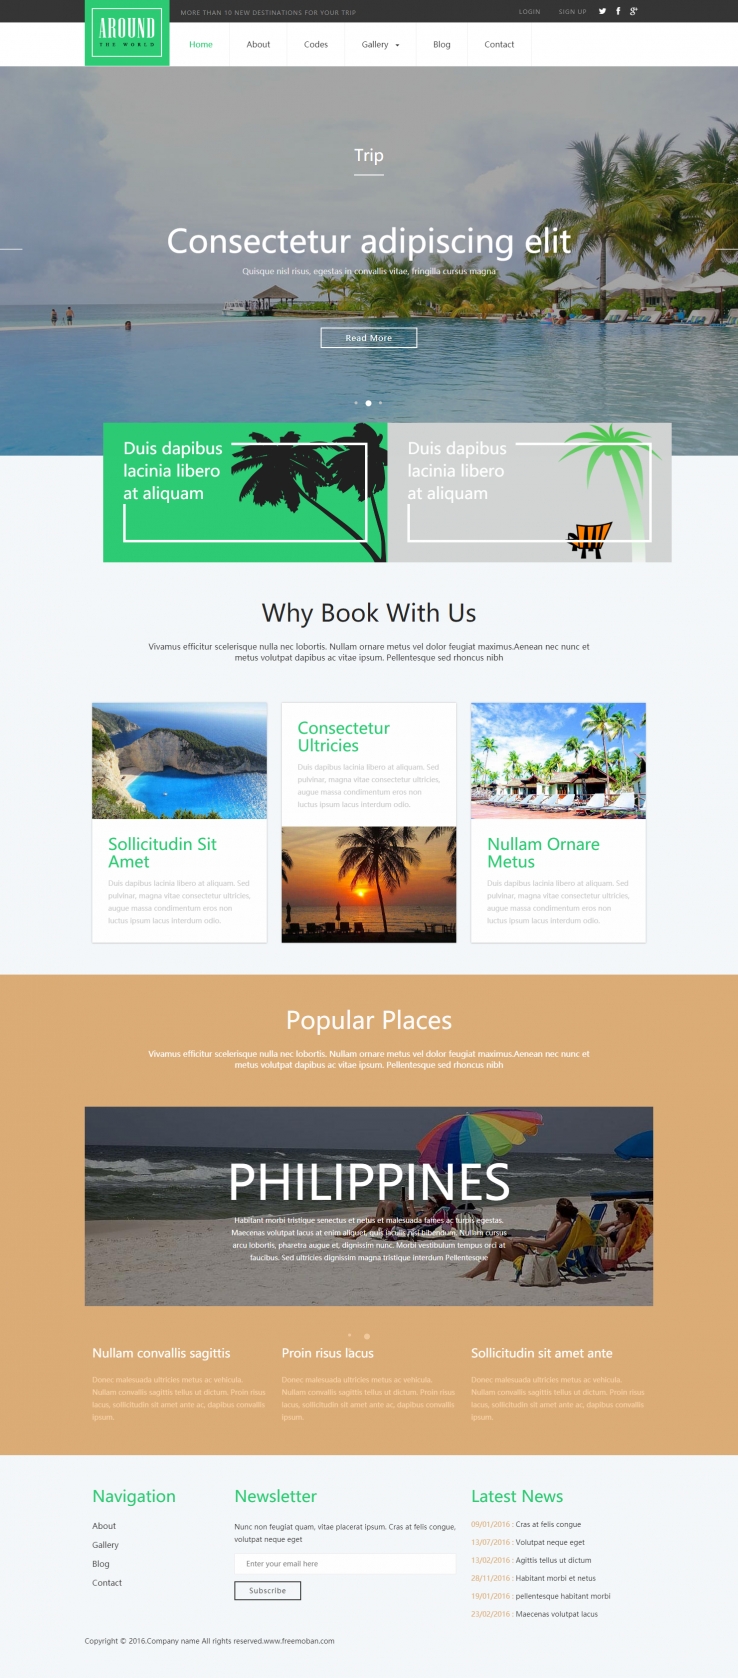 绿色简洁风格的海滩度假旅游企业网站模板